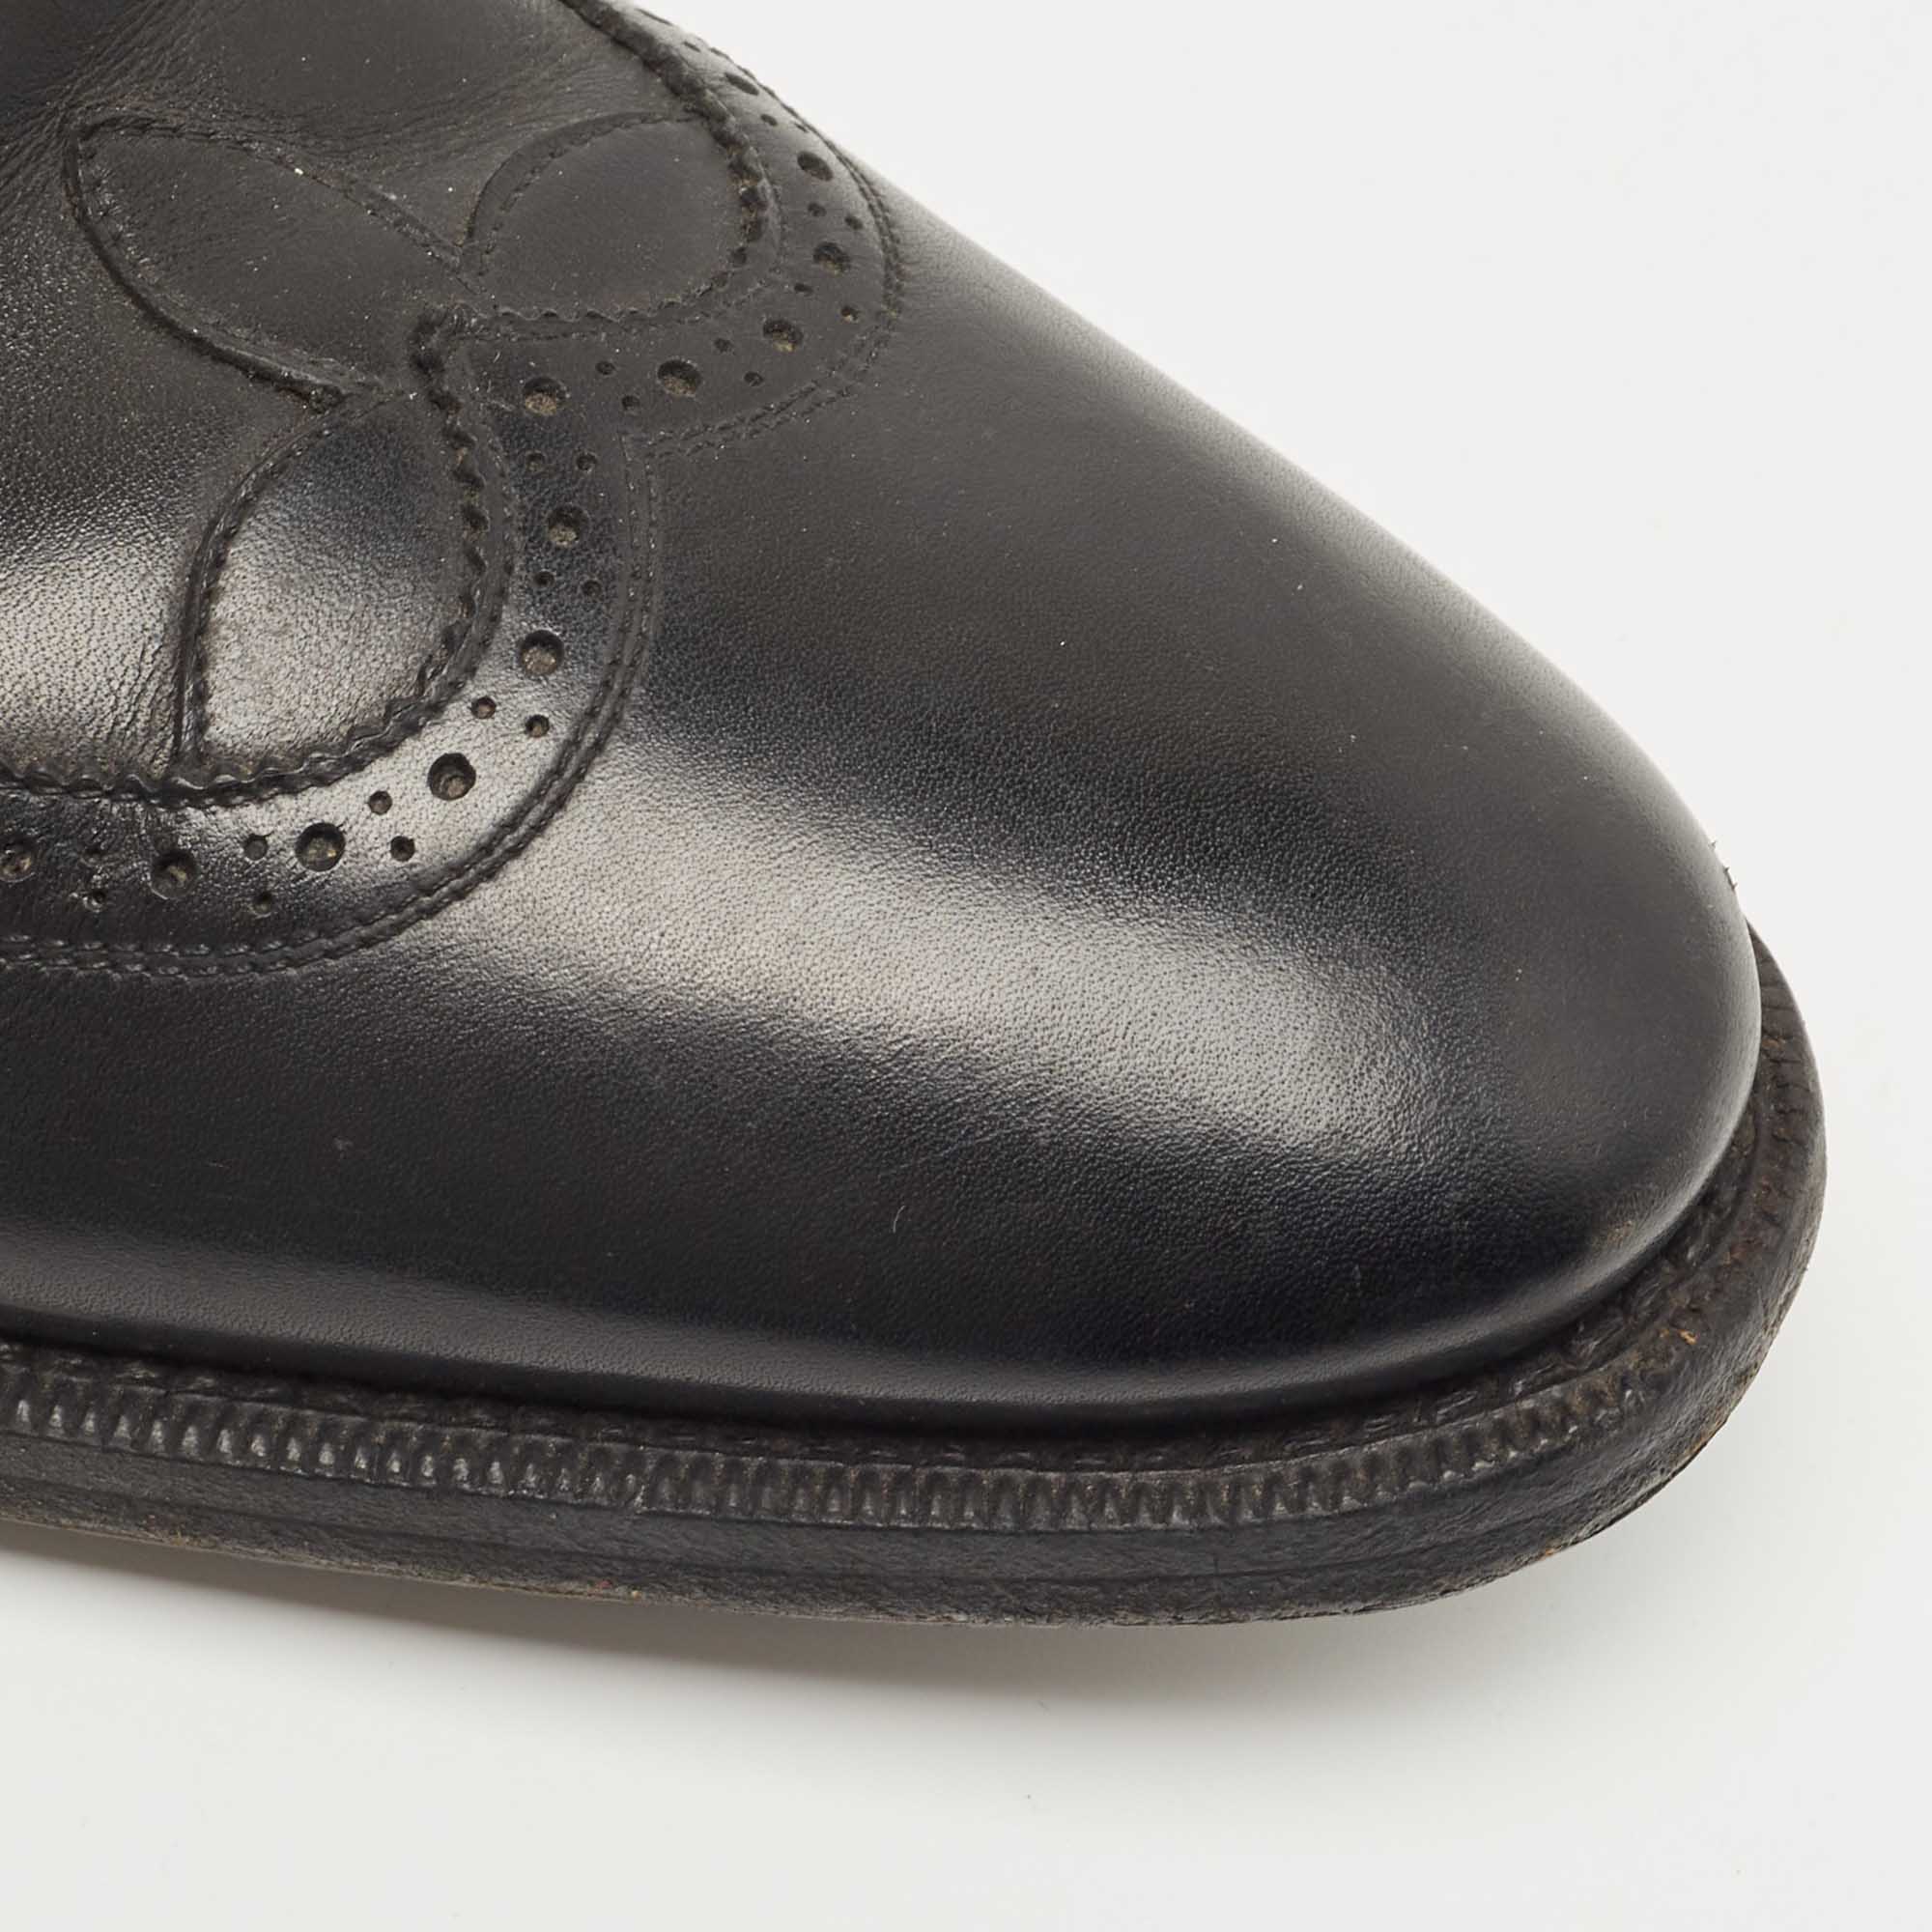 Louis Vuitton Black Leather Lace Up Oxfords Size 44